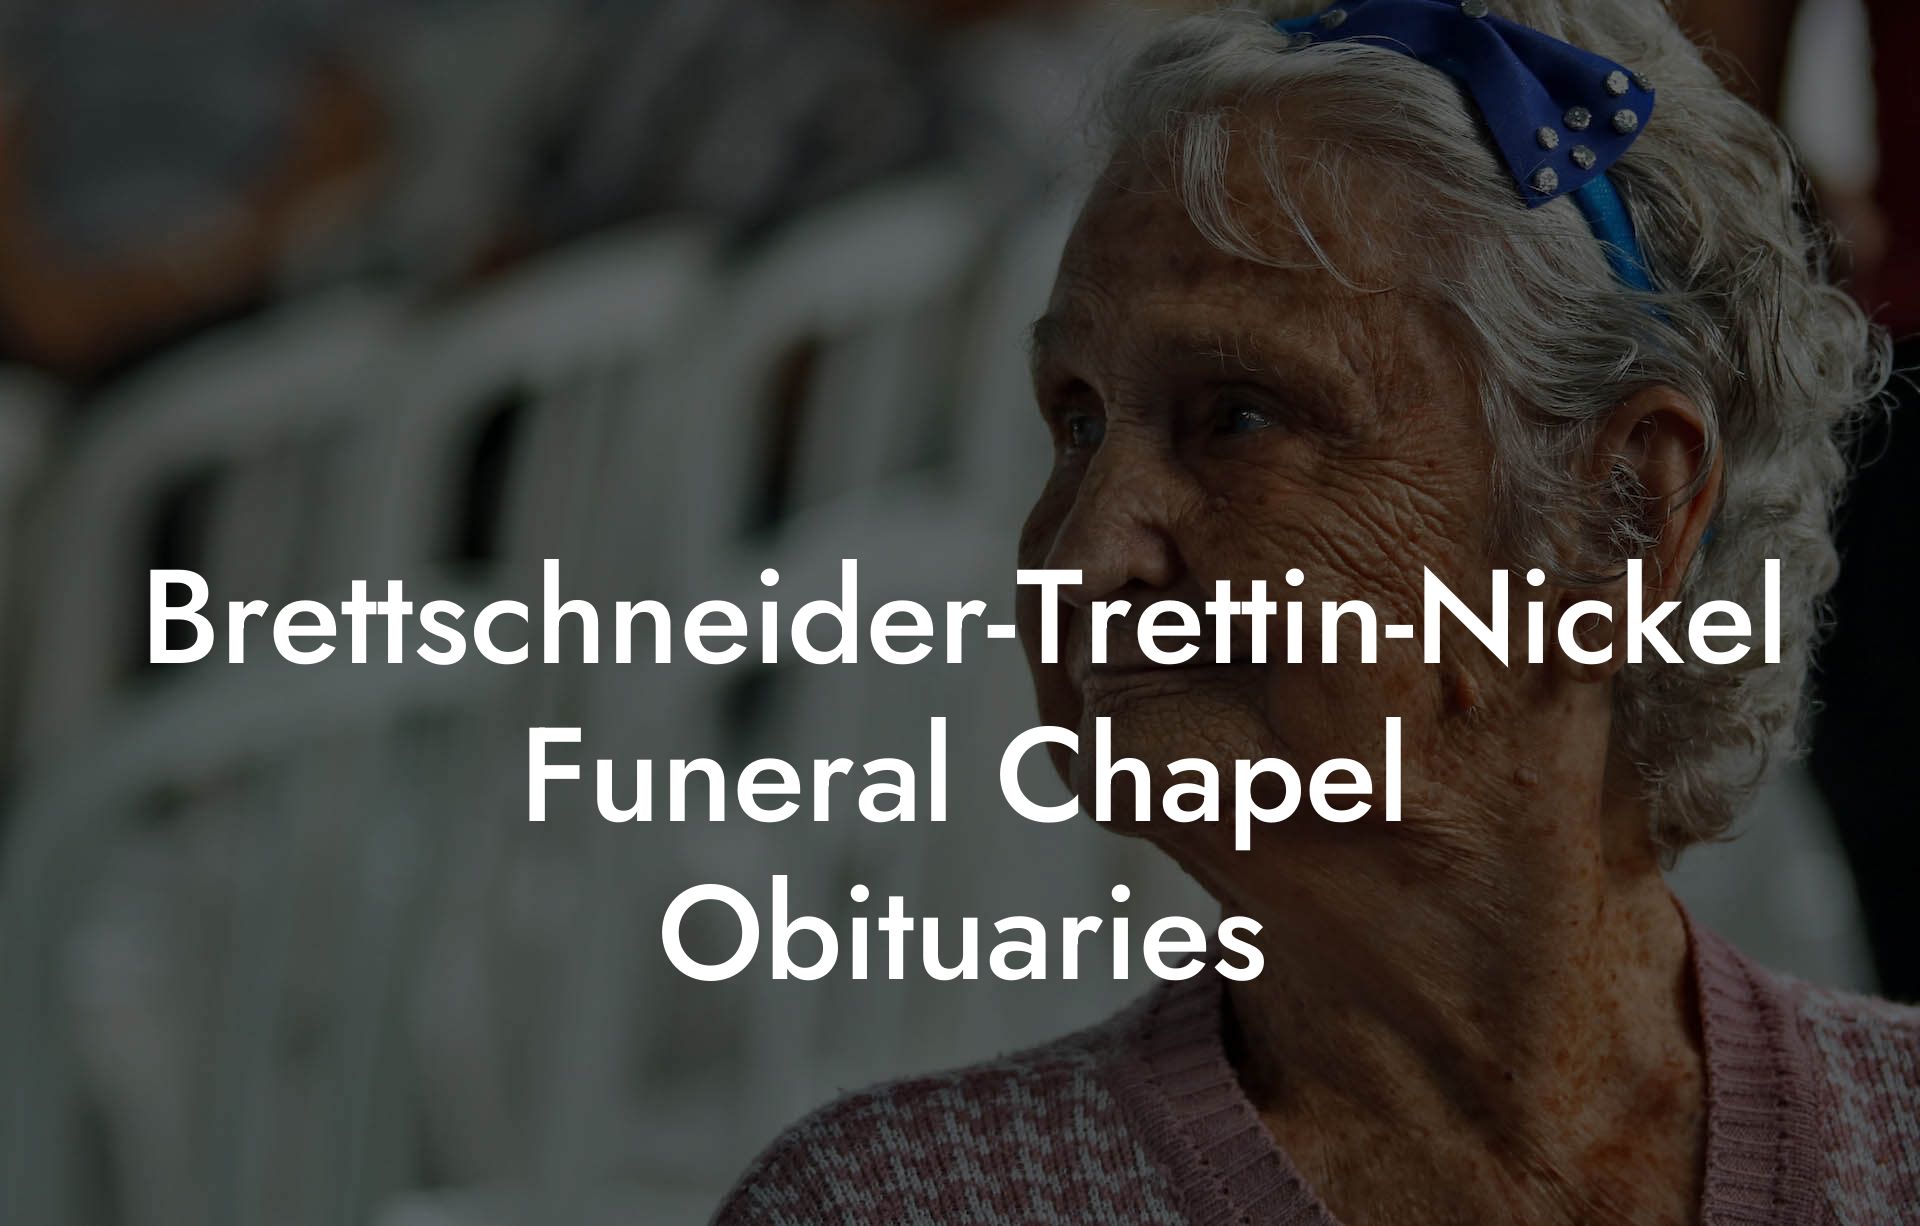 Brettschneider-Trettin-Nickel Funeral Chapel Obituaries